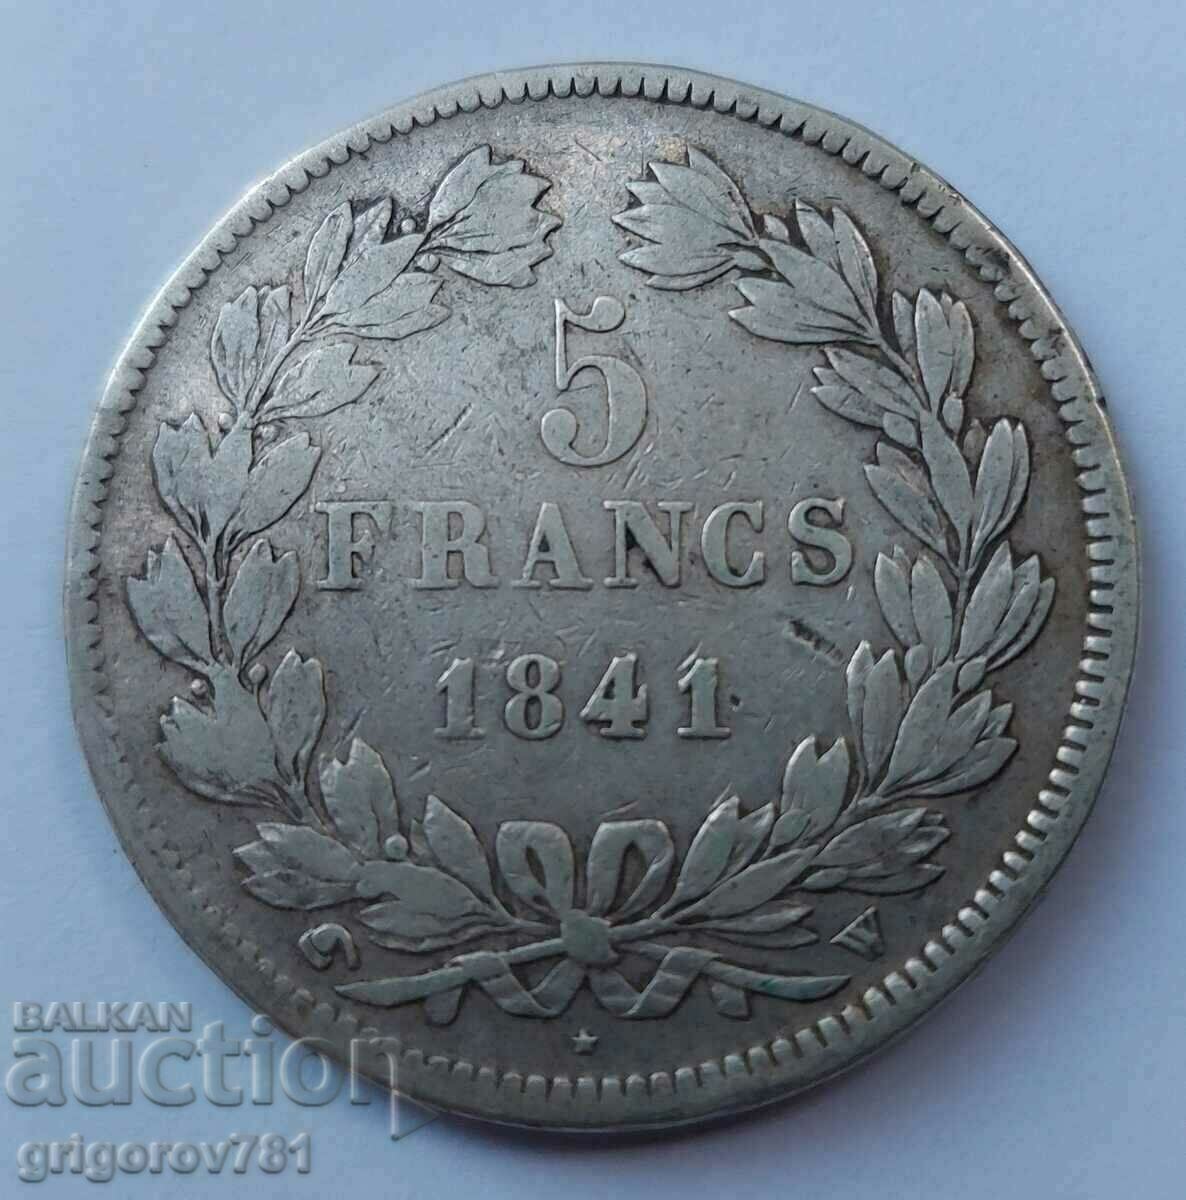 Ασημένιο 5 φράγκα Γαλλία 1841 W - ασημένιο νόμισμα # 43